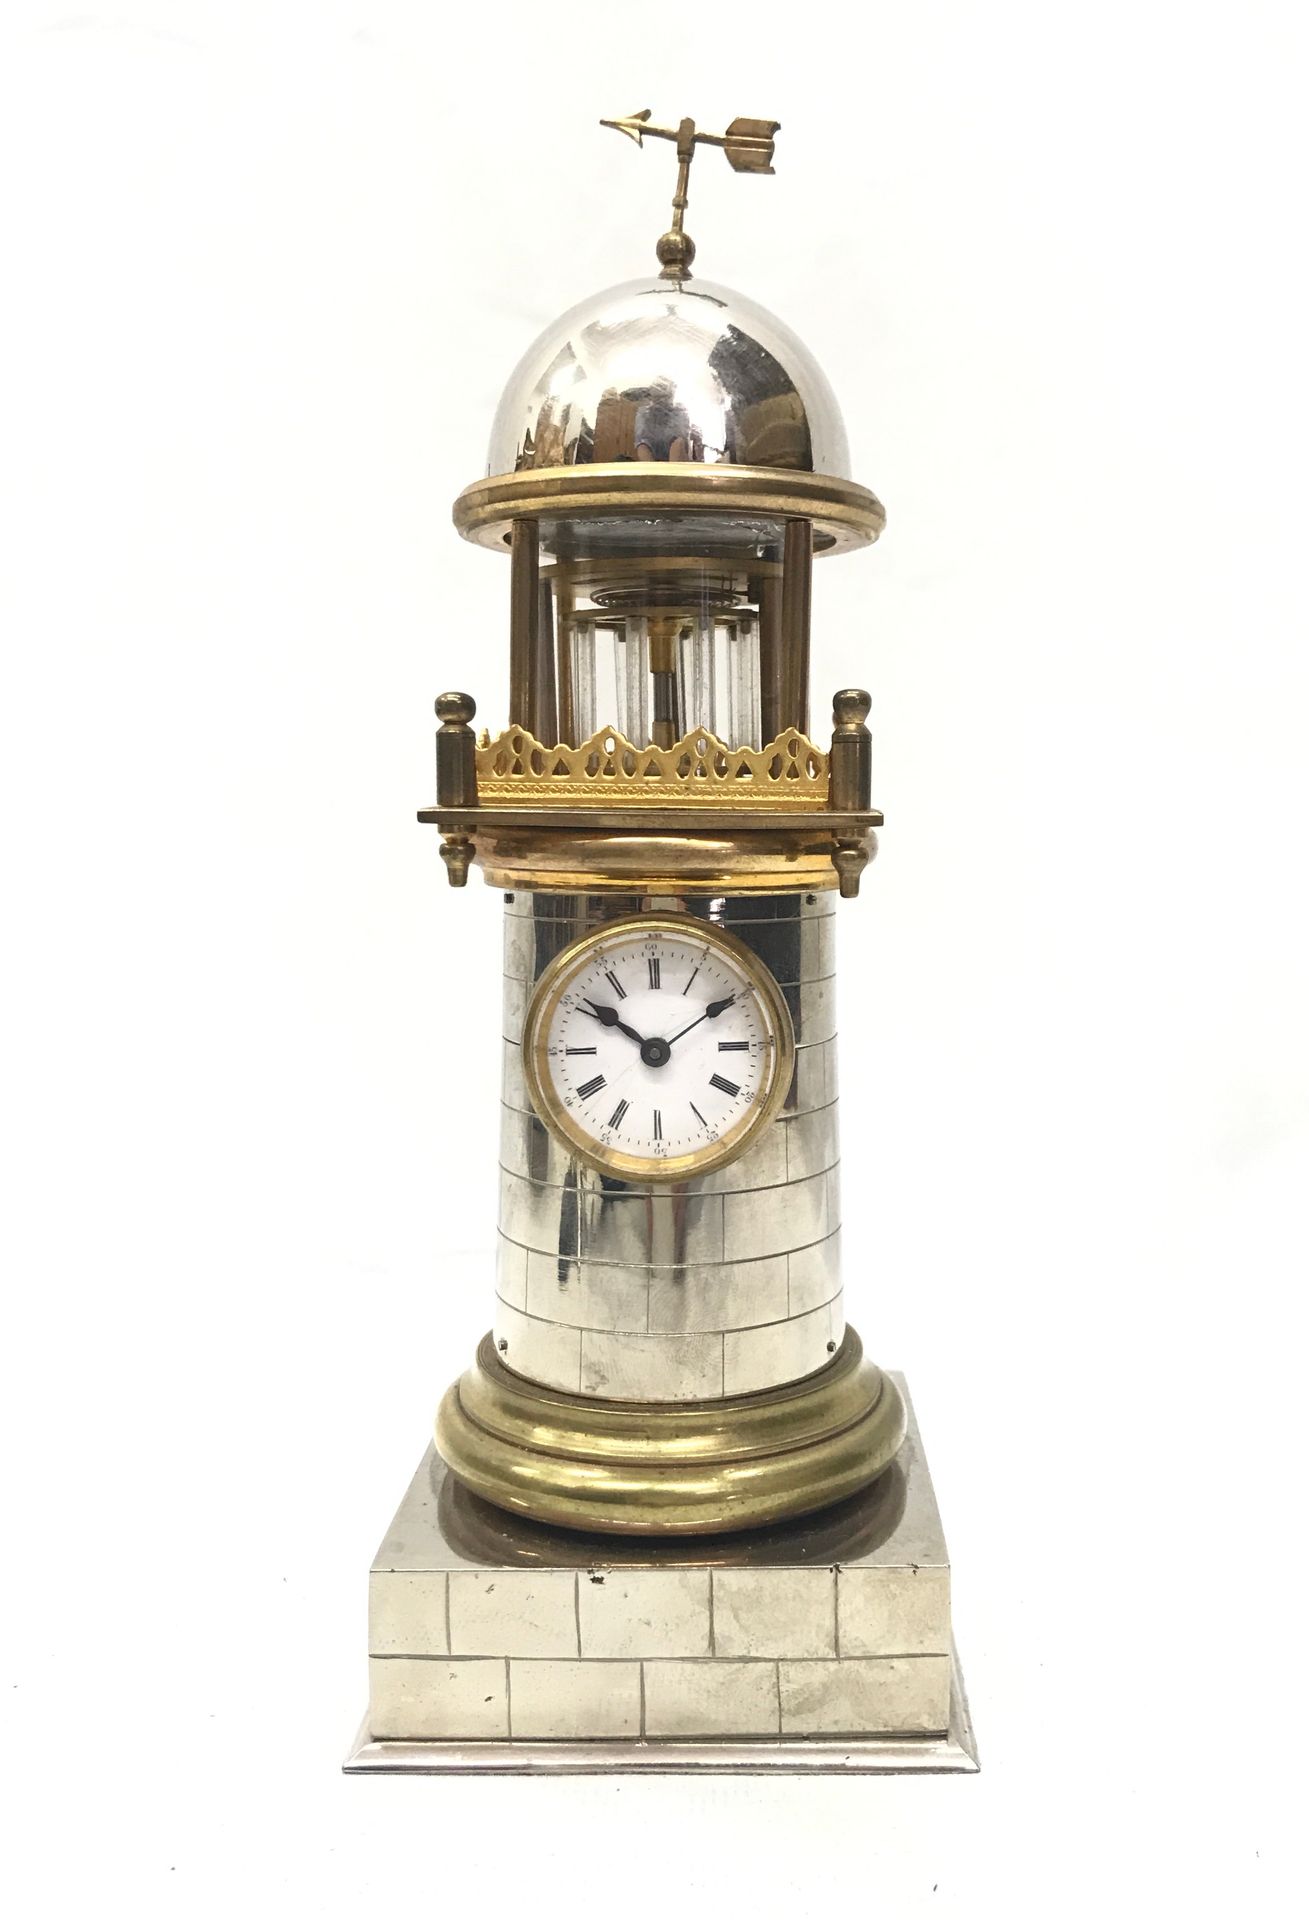 Null 灯塔时钟

银色和镀金青铜的灯塔钟。白色珐琅表盘，罗马数字，触发式擒纵机构。

约1890年。

在玻璃球下，运动在工作。

高21,5厘米。宽度8厘&hellip;